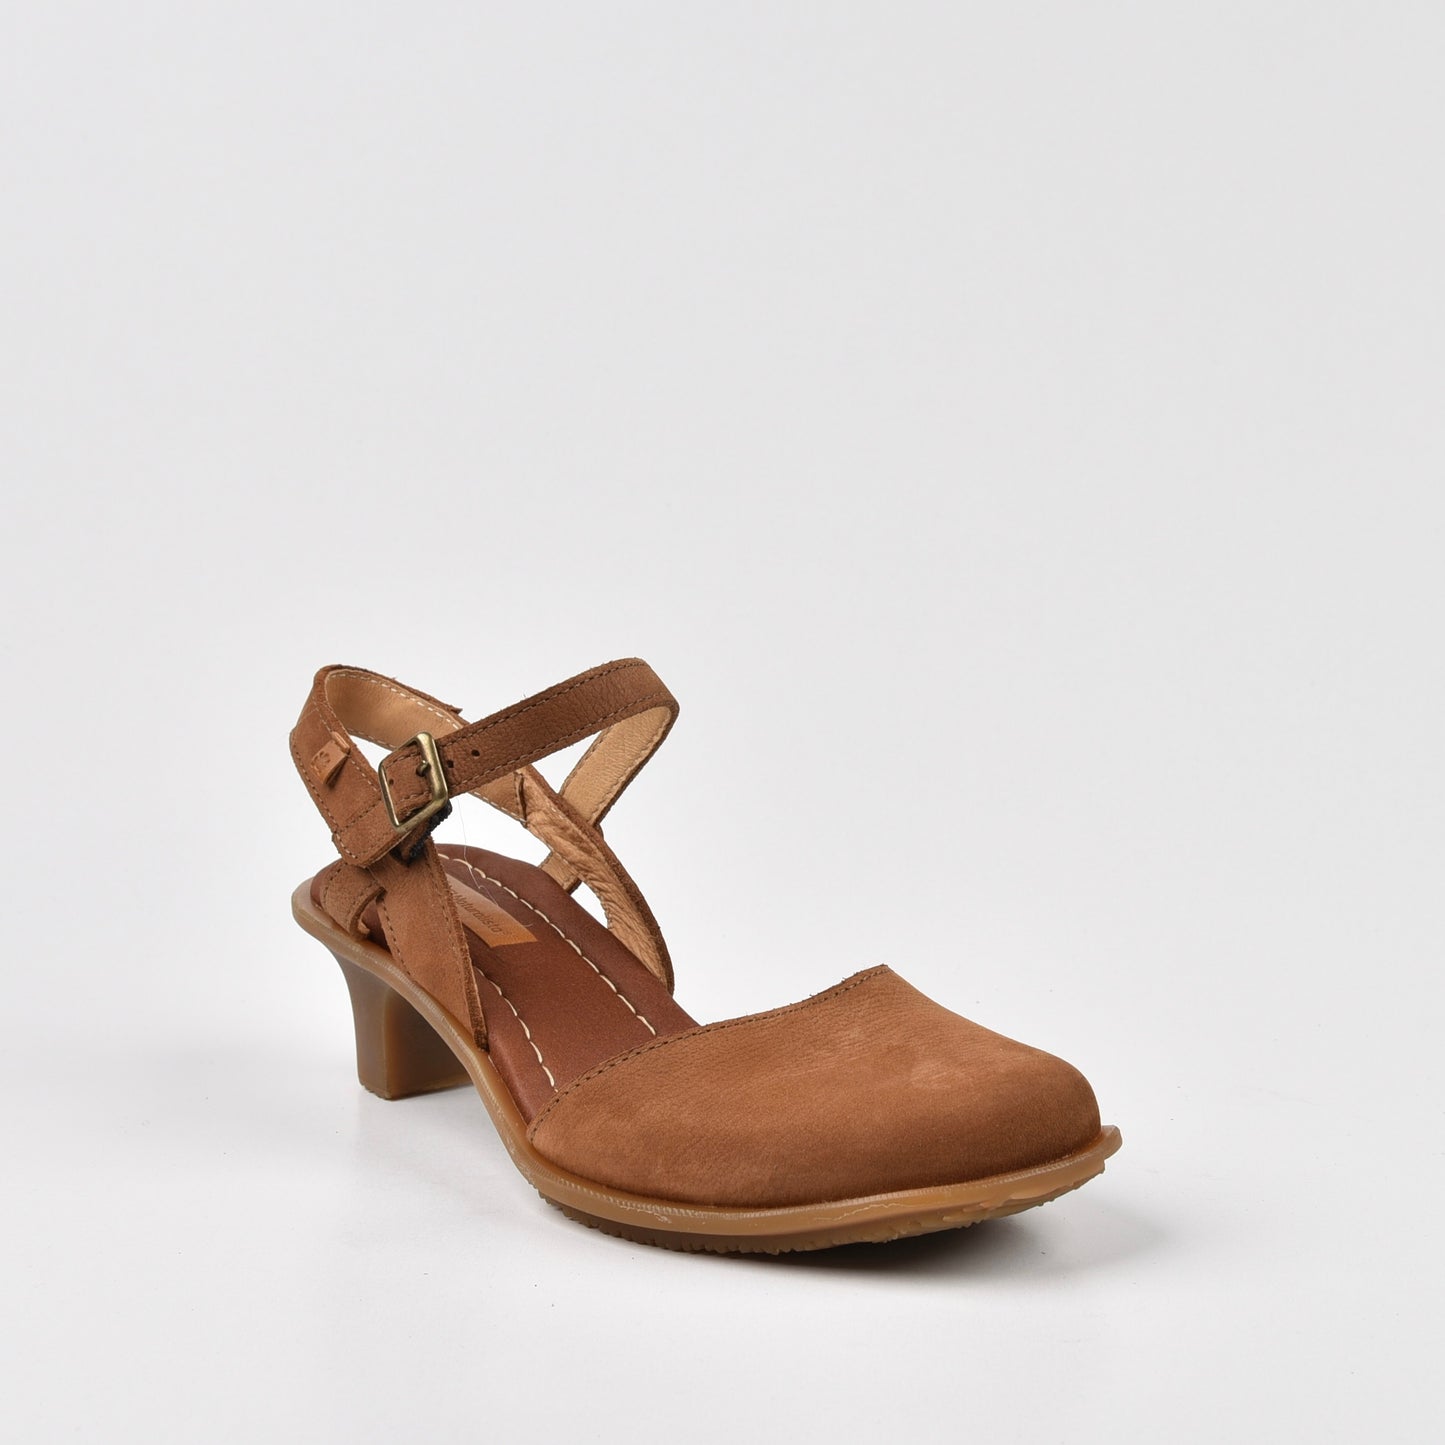 Art Spanish Strap Medium Heel Sandal for Women in Camel.